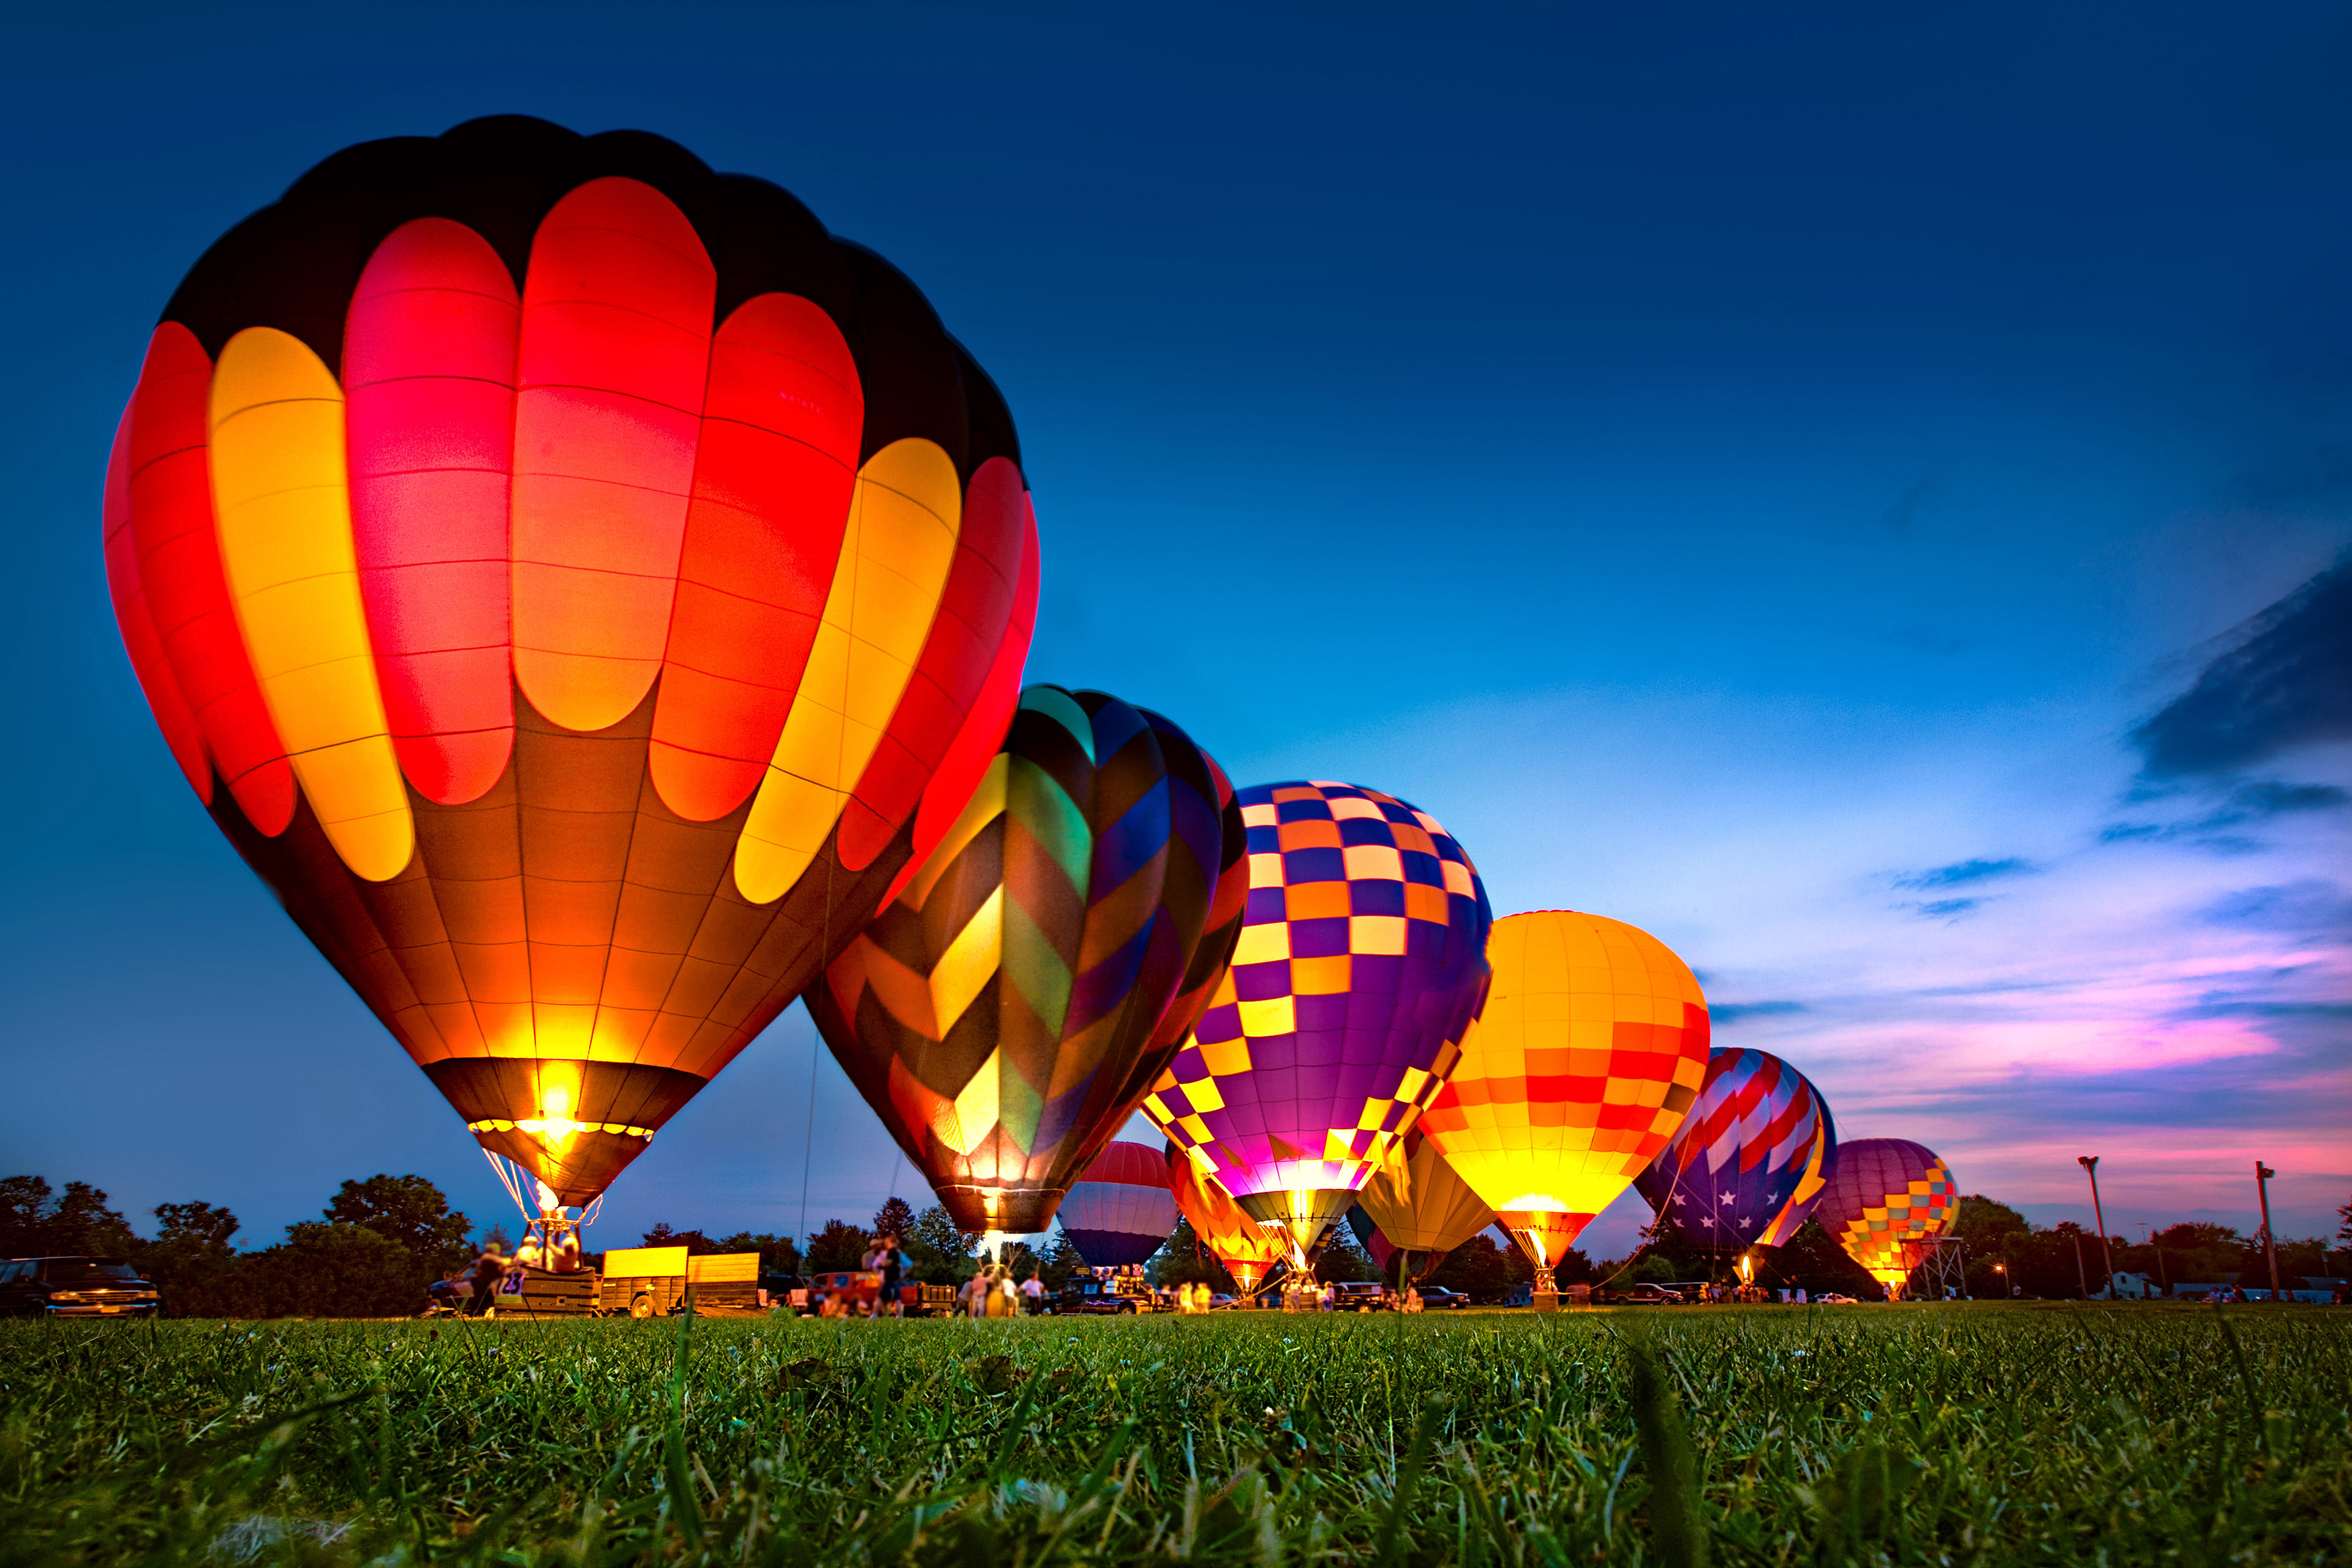 Hot air balloon illuminated